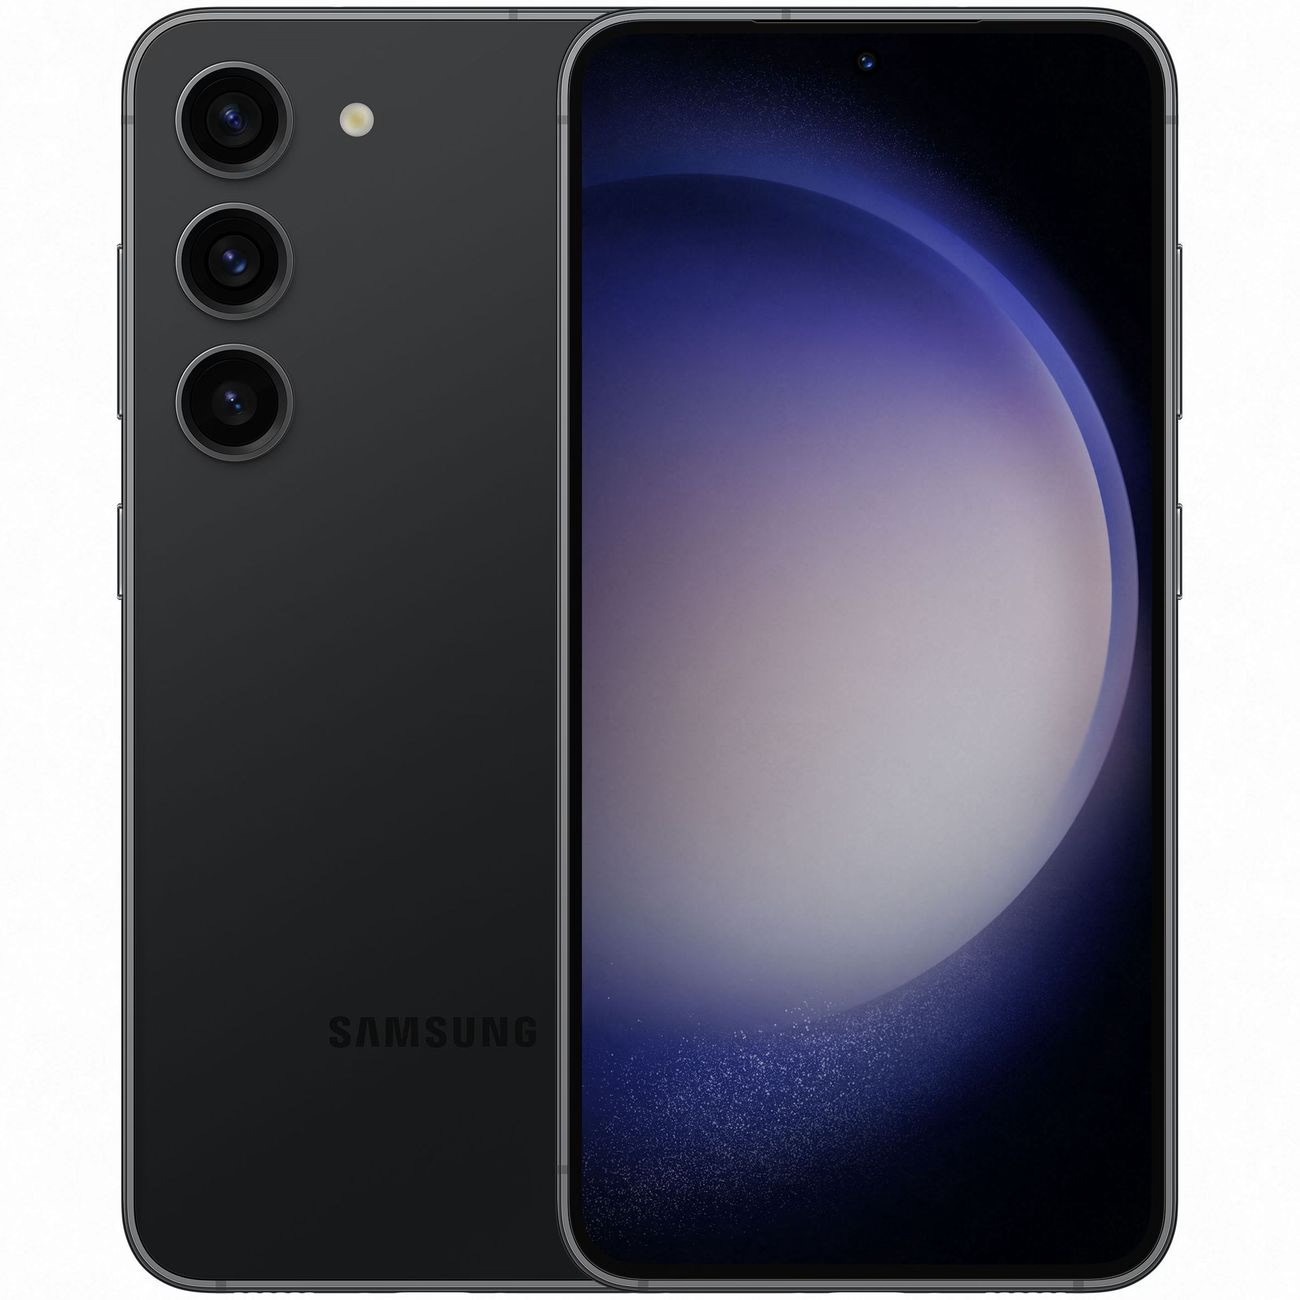 Купить смартфон samsung galaxy s23 8/128gb phantom black S-Серия в официальном магазине Apple, Samsung, Xiaomi. iPixel.ru Купить, заказ, кредит, рассрочка, отзывы,  характеристики, цена,  фотографии, в подарок.